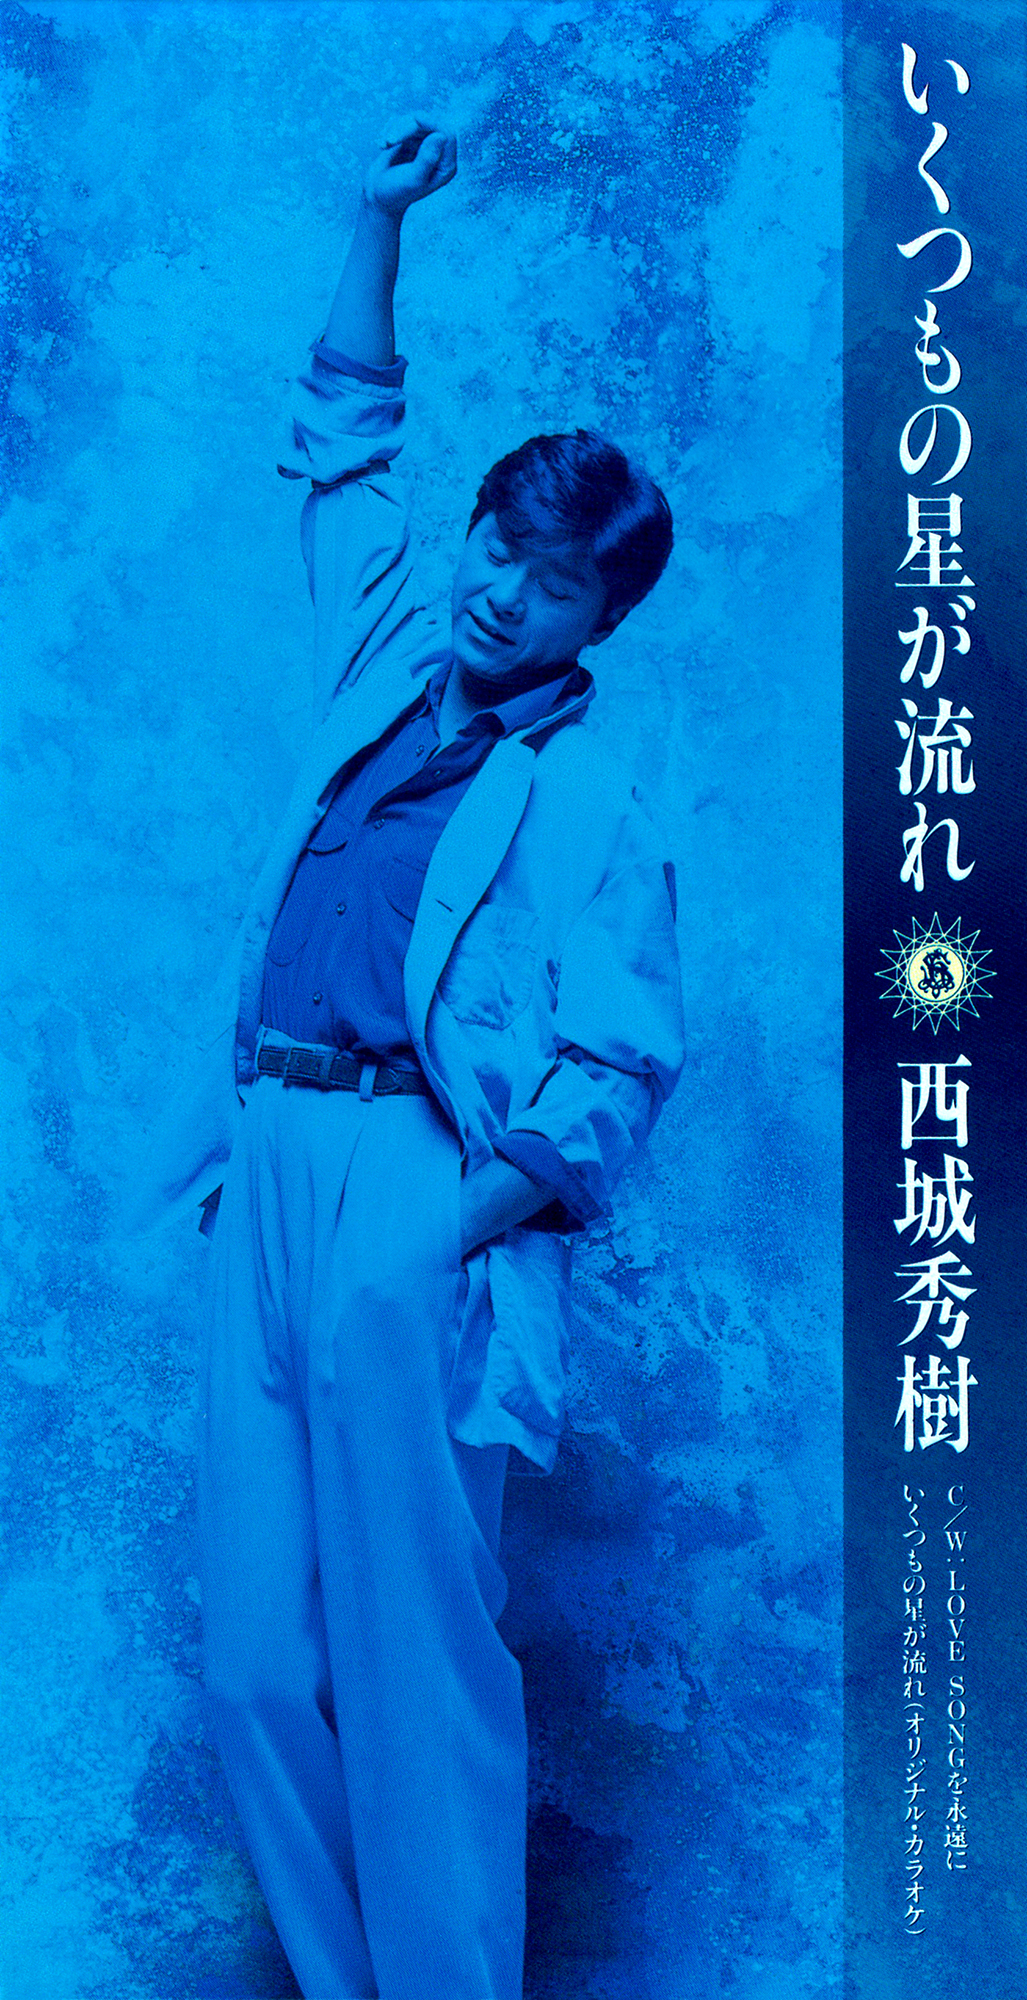 西城秀樹 69thシングル『いくつもの星が流れ』(1993年11月21日発売) 高画質CDジャケット画像